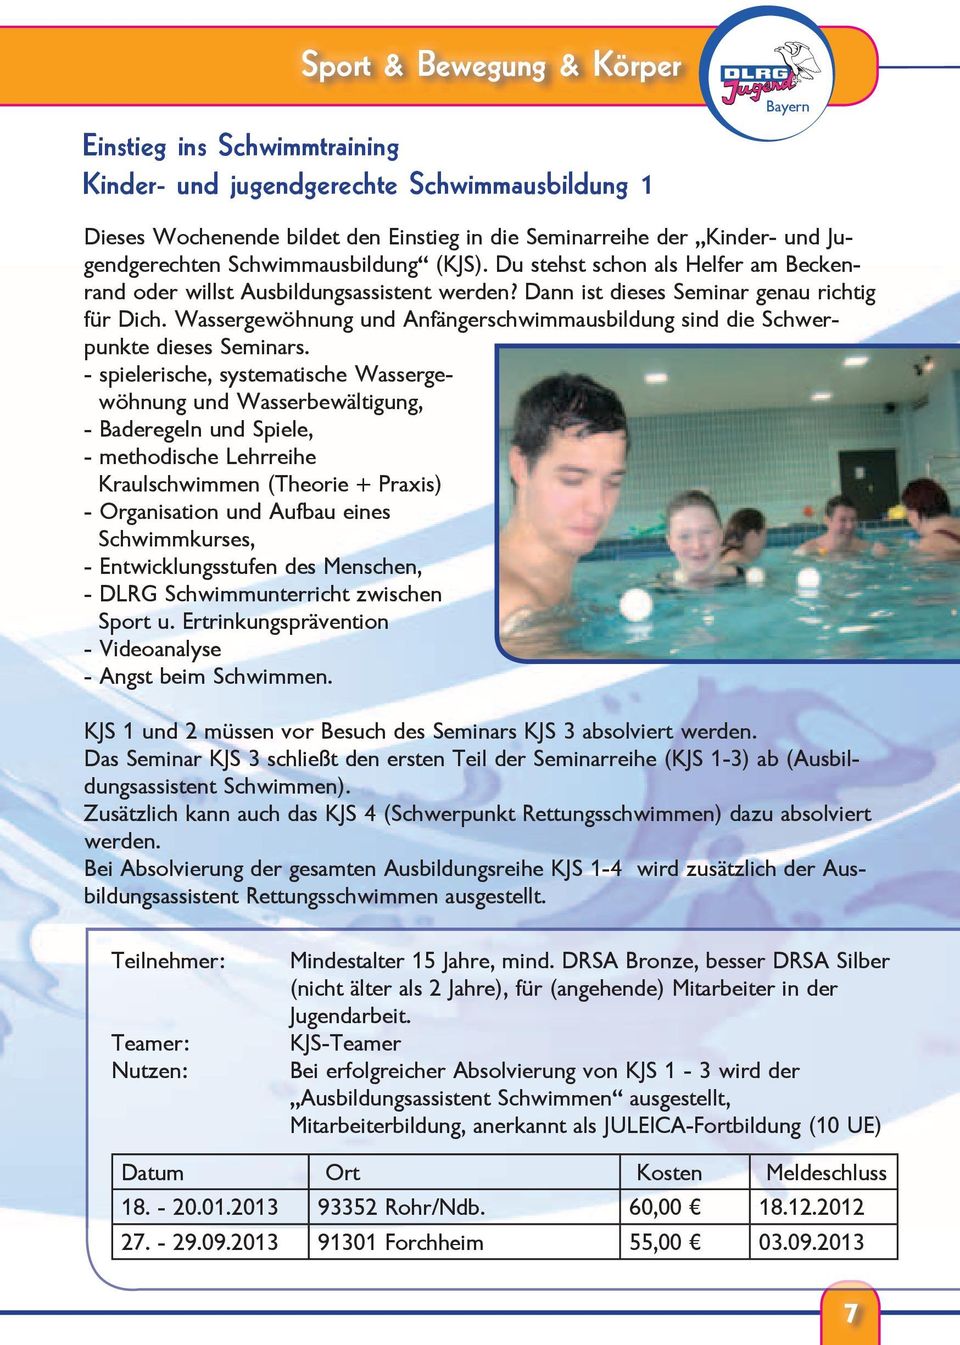 Wassergewöhnung und Anfängerschwimmausbildung sind die Schwerpunkte dieses Seminars.